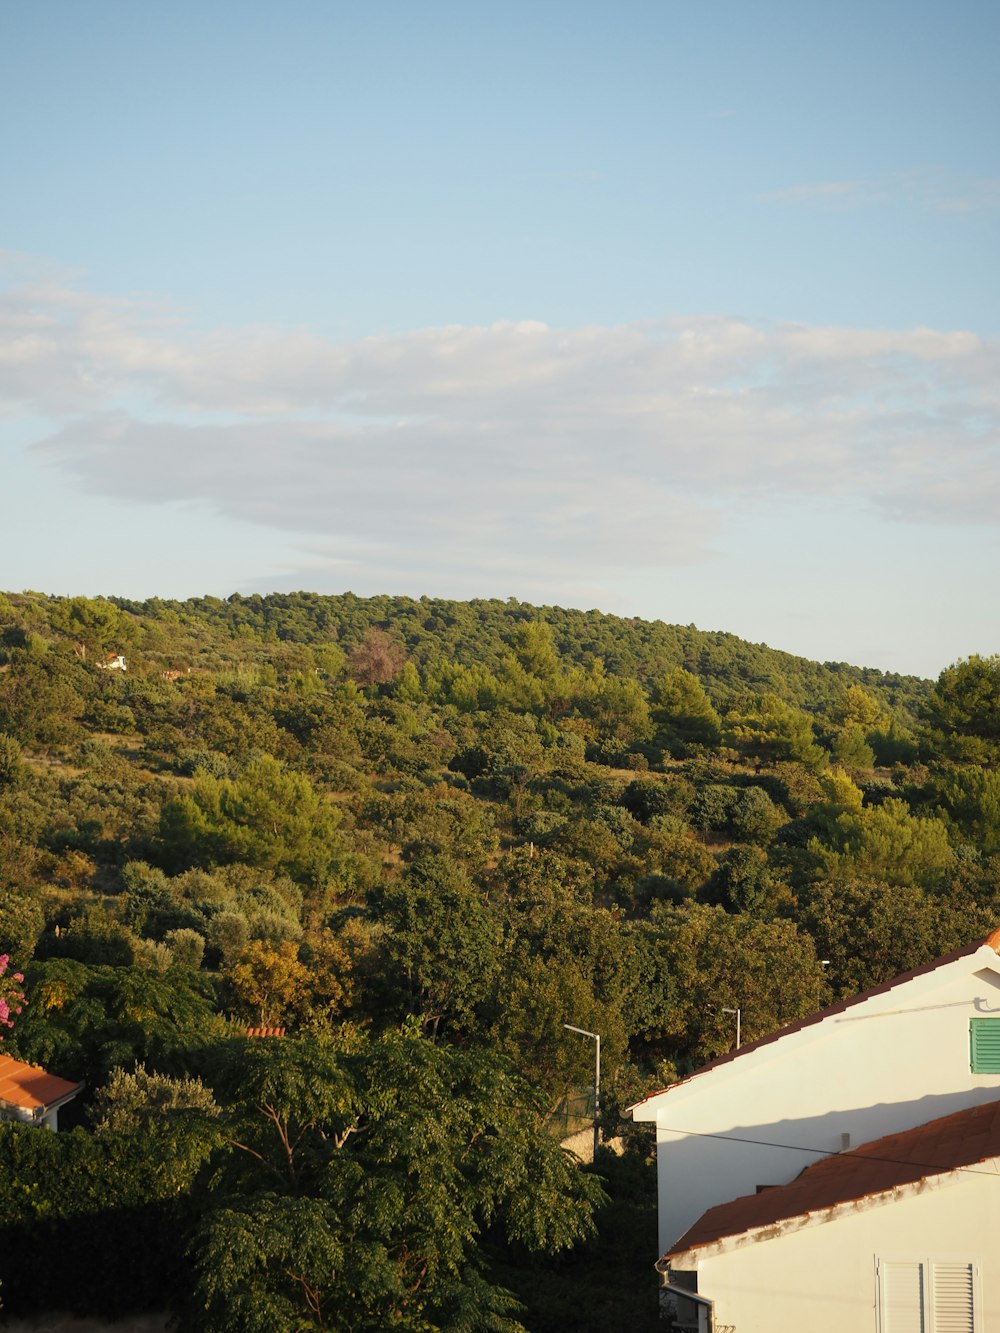 Una vista de una colina con árboles y edificios